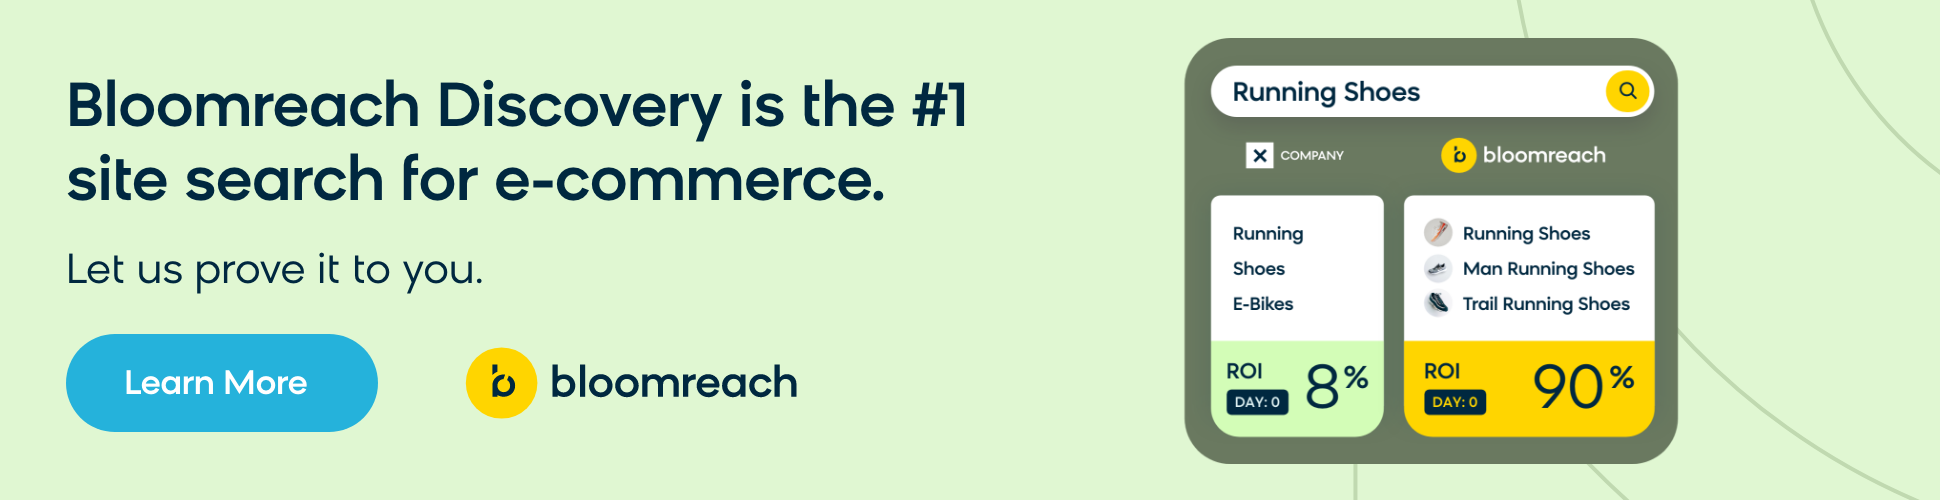 Bloomreach Discovery est le numéro 1 de la recherche sur site e-commerce.